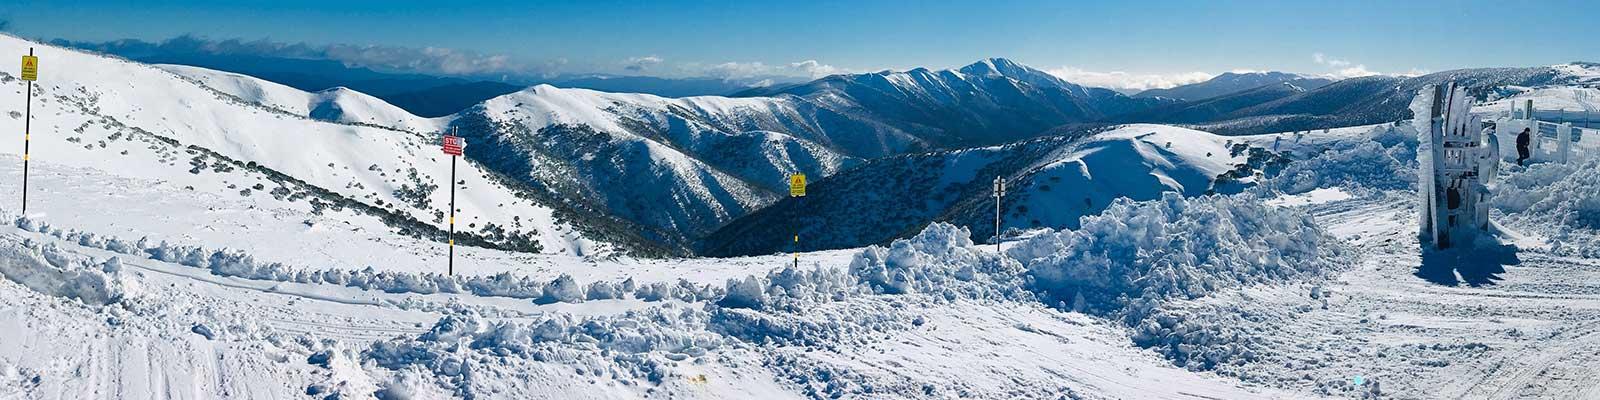 7 of the best ski resorts in Australia for 2020